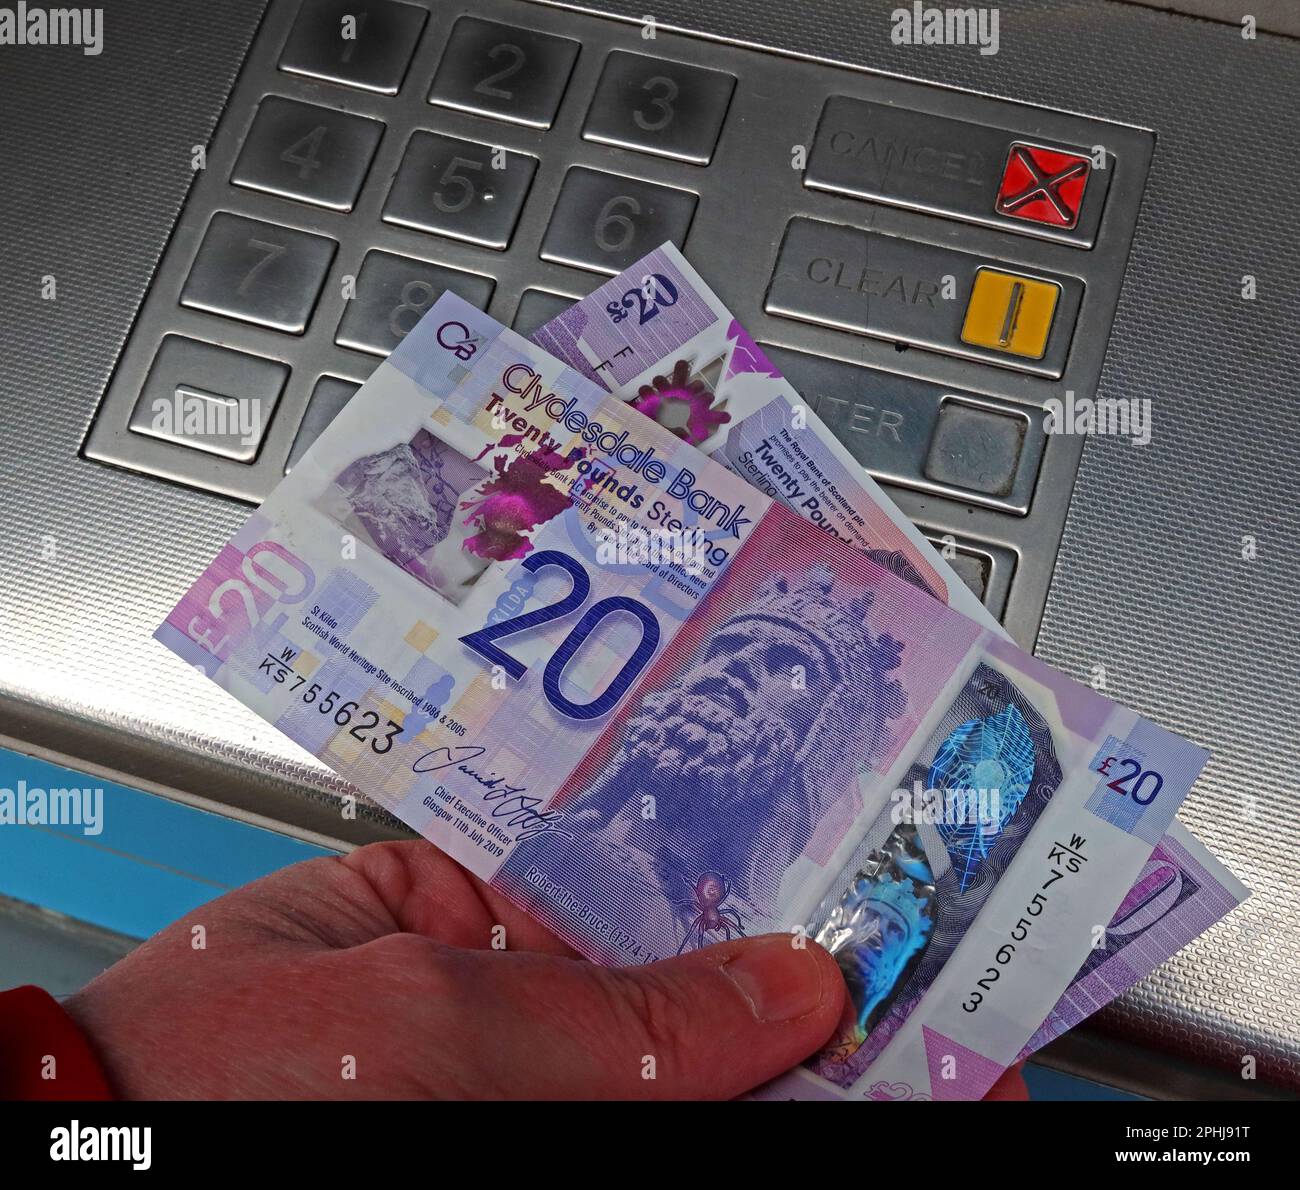 Cash point - banconote scozzesi, distribuite da un bancomat locale, bancomat Teller automatico, Glasgow, Scozia, Regno Unito, G3 8AD Foto Stock